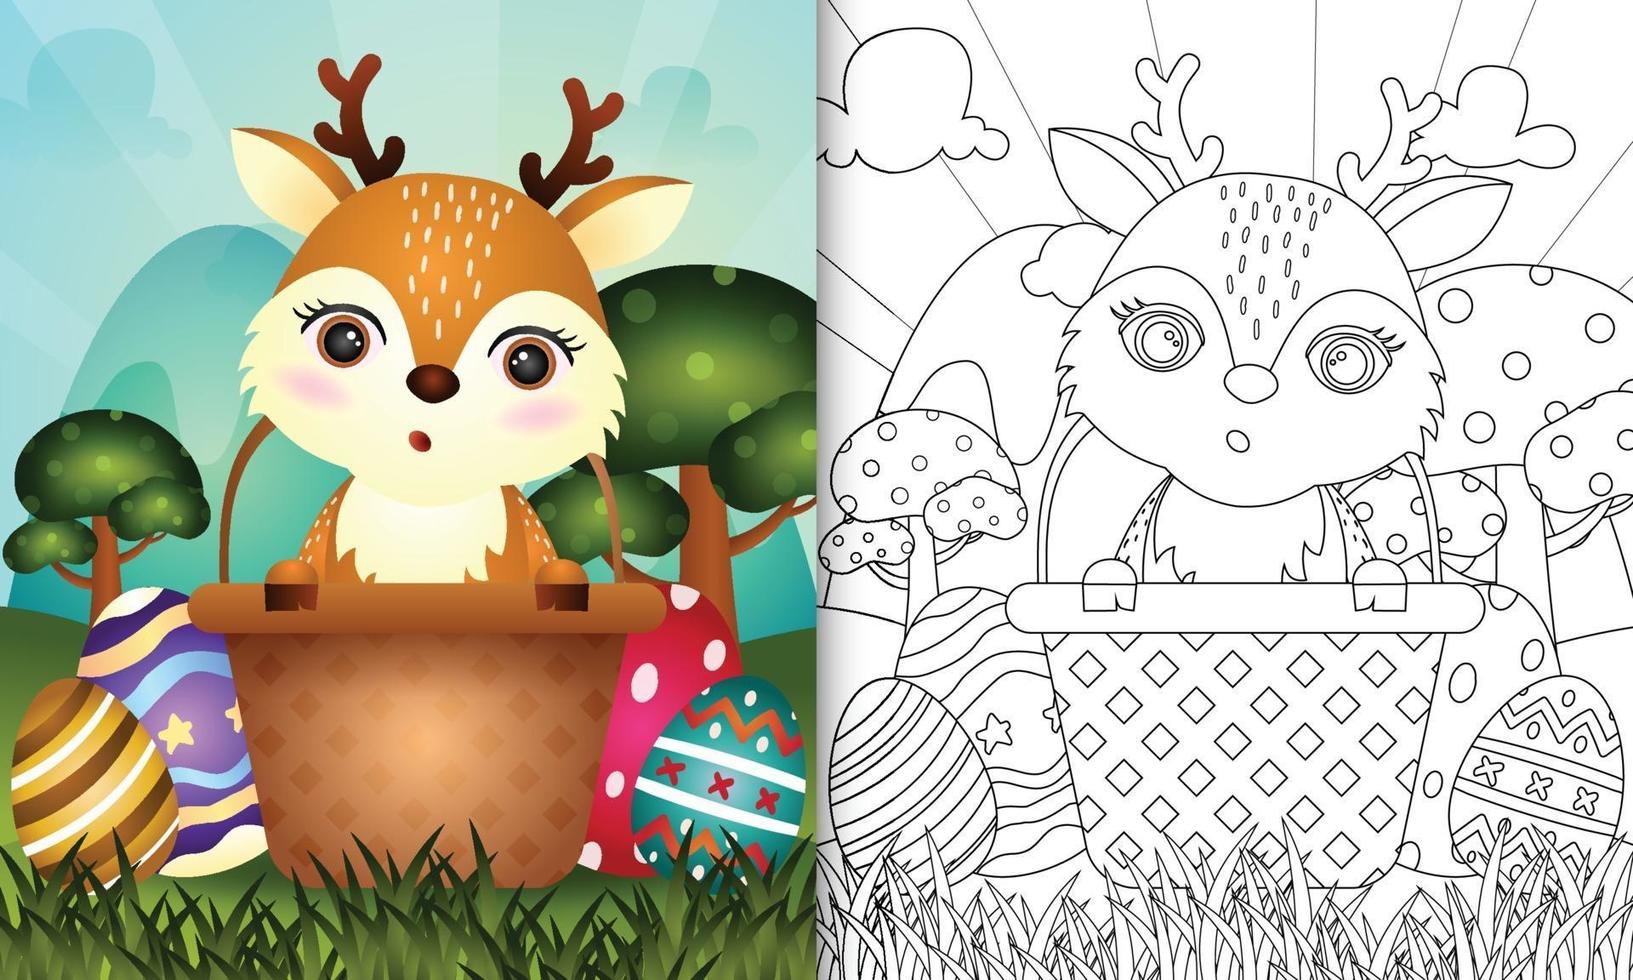 Livre de coloriage pour les enfants sur le thème de joyeuses pâques avec illustration de personnage d'un cerf mignon dans l'oeuf de seau vecteur